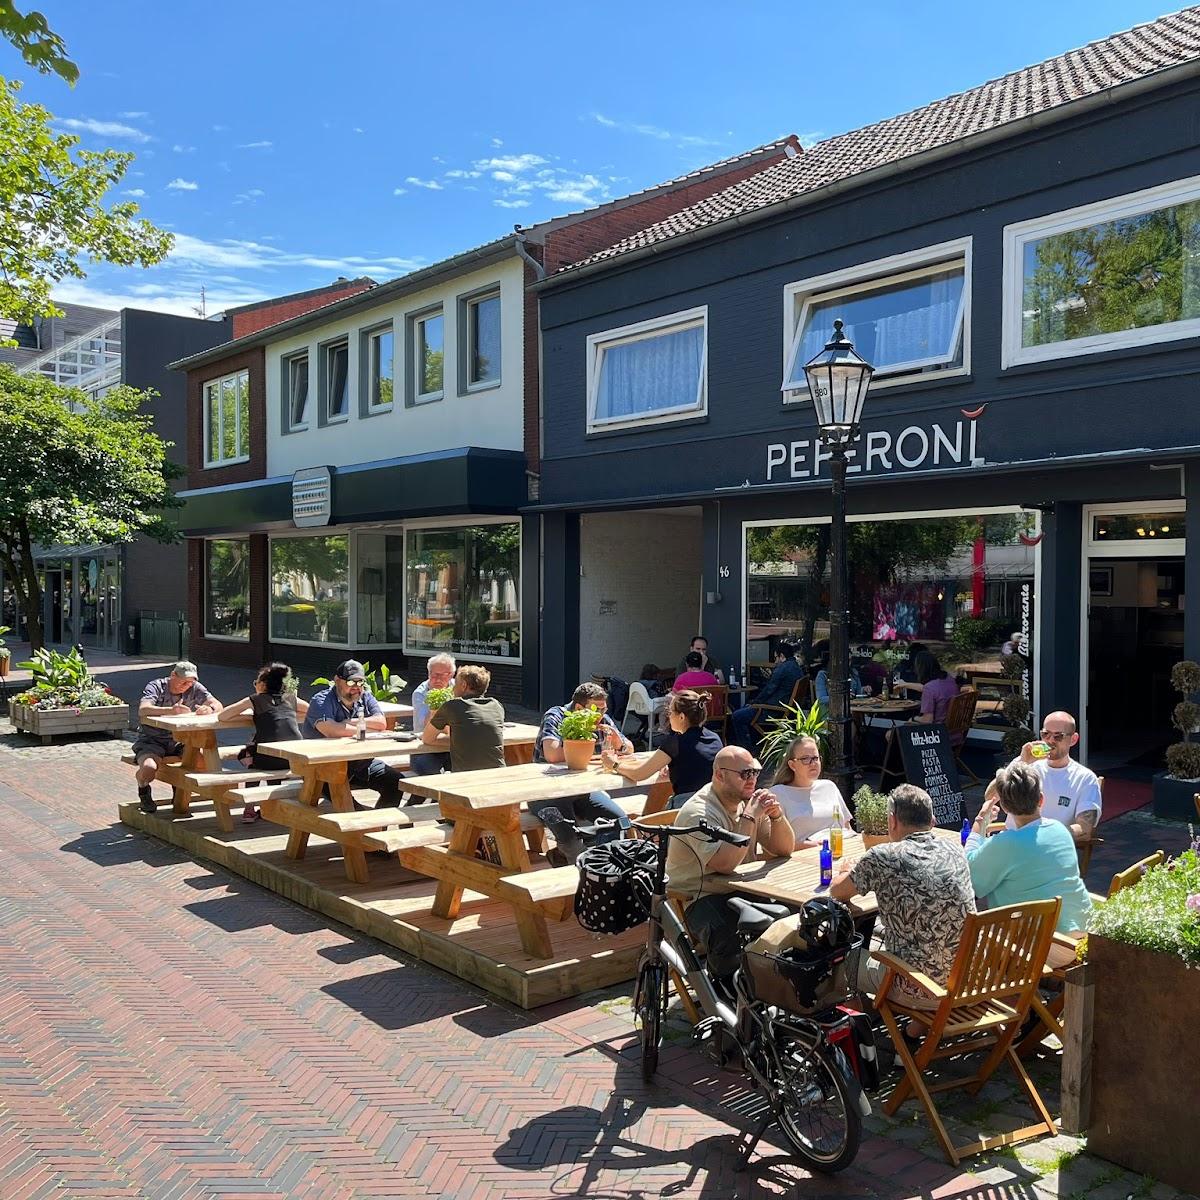 Restaurant "Peperoni Bistrorante" in Papenburg